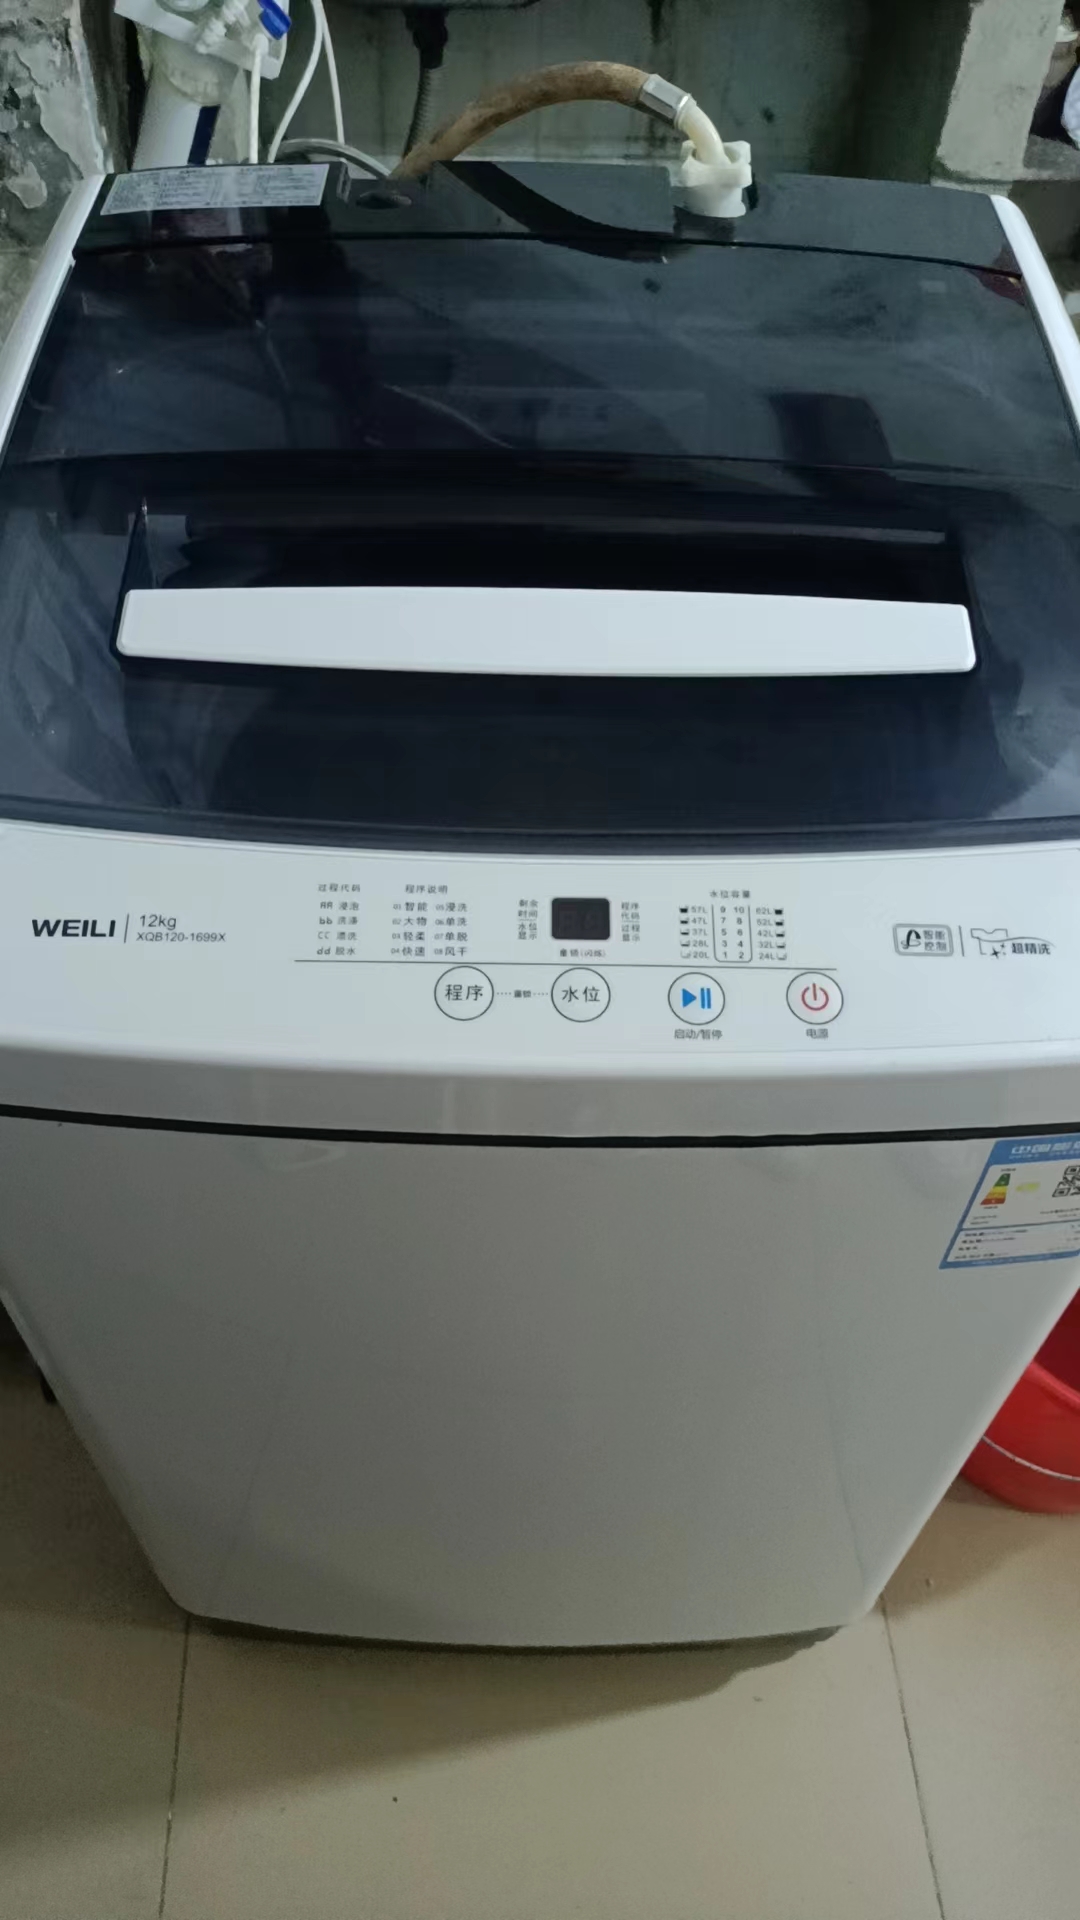 威力(WEILI)12公斤大容量家用波轮洗衣机全自动13分钟速洗量衣判水 一键桶风干防锈箱体 XQB120-1699X晒单图